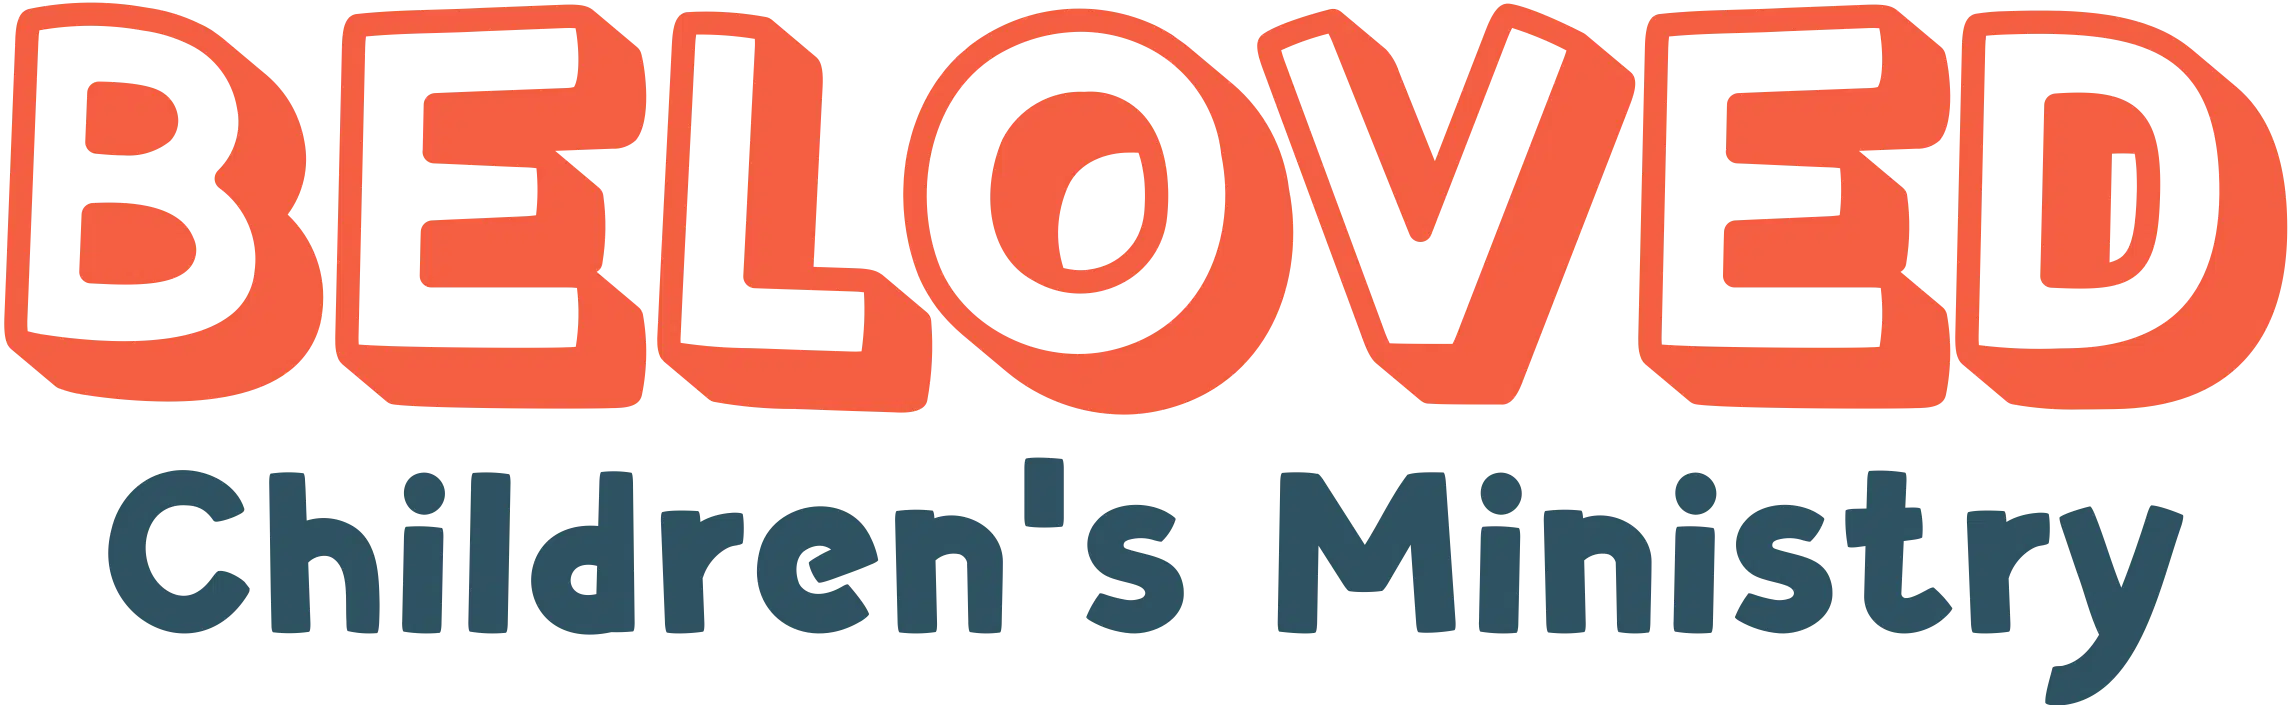 beloved logo